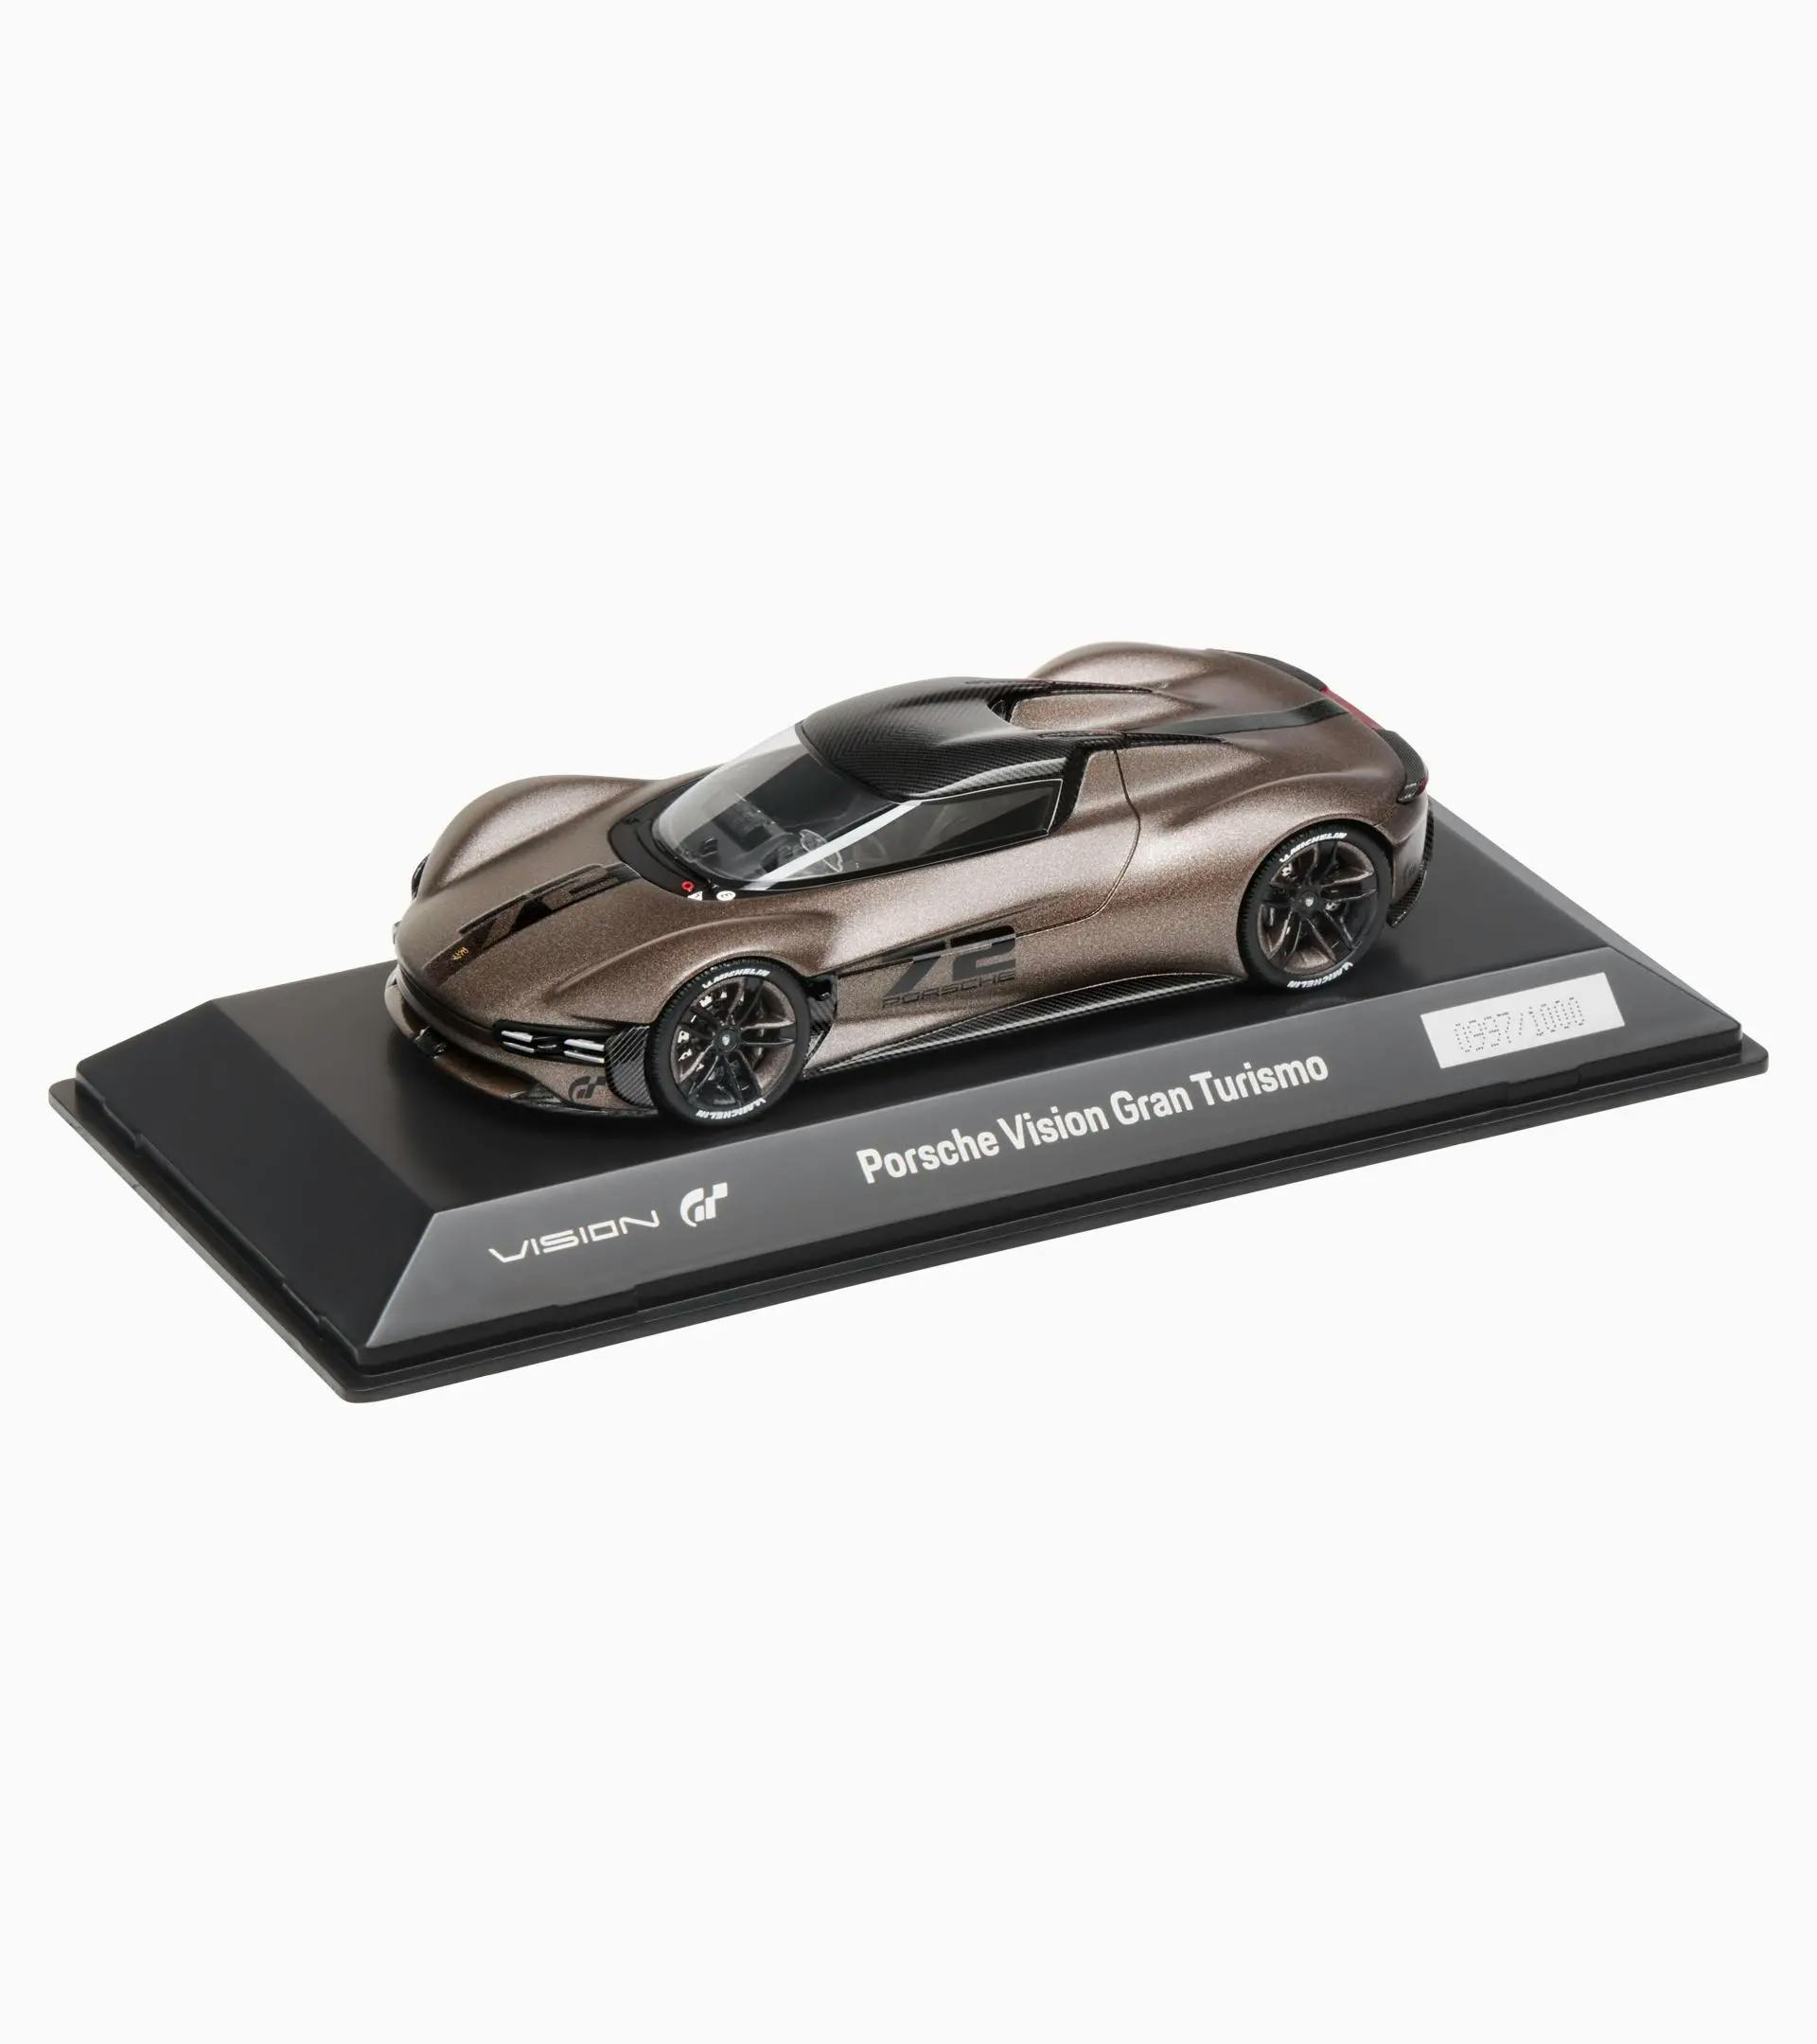 Porsche Vision Gran Turismo – Limited Edition 1